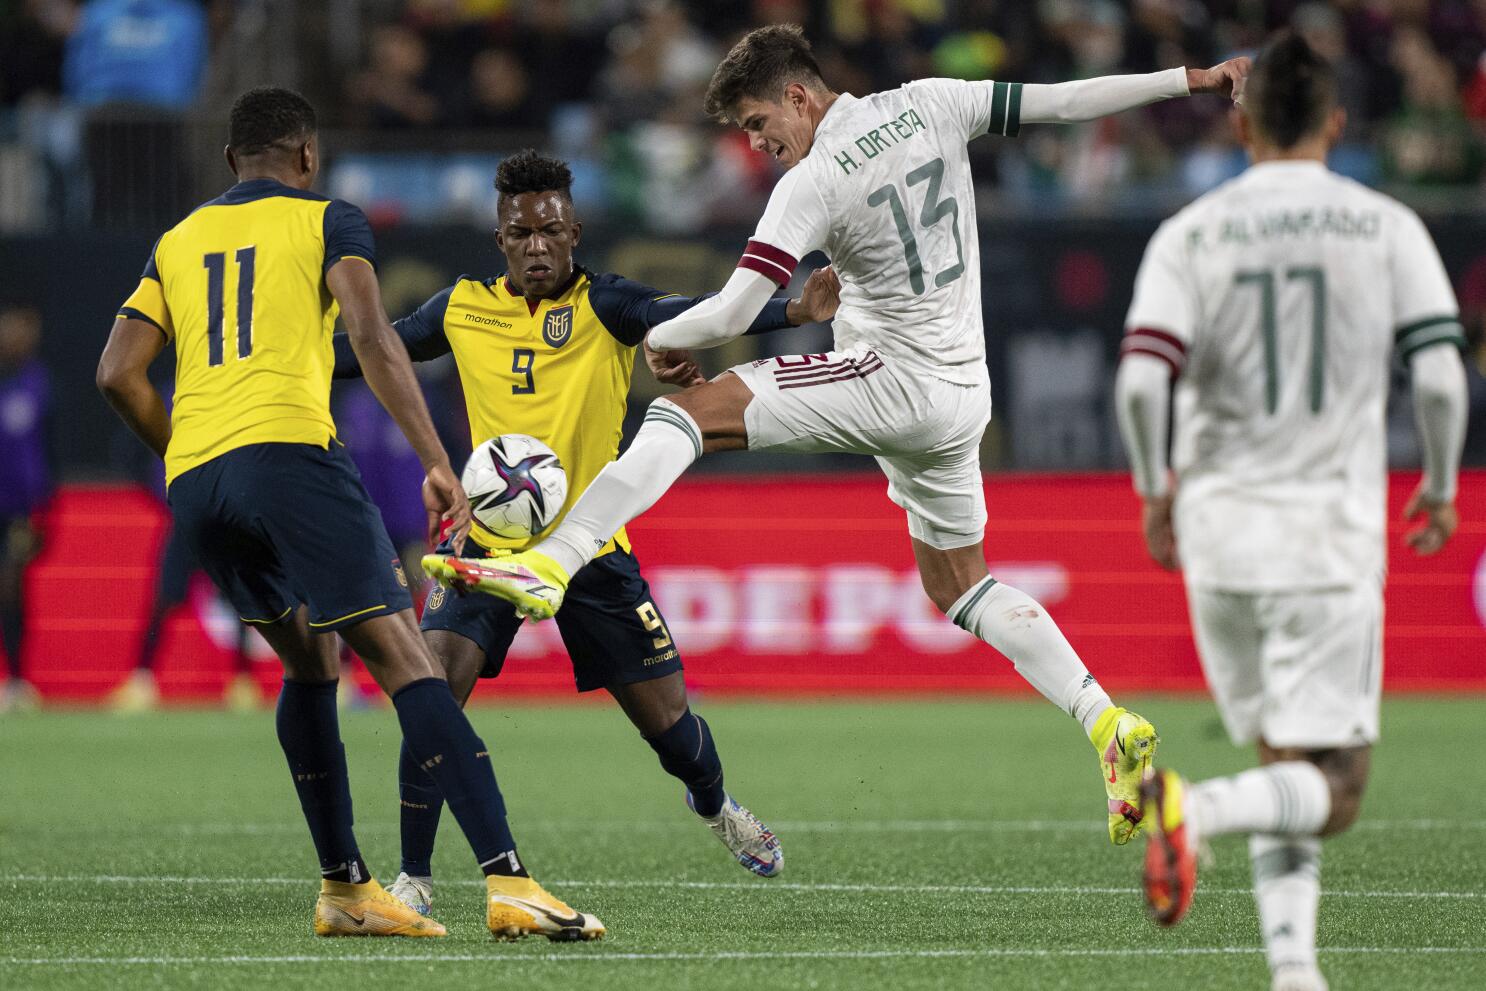 Pierde México con Ecuador en juego amistoso - Los Angeles Times